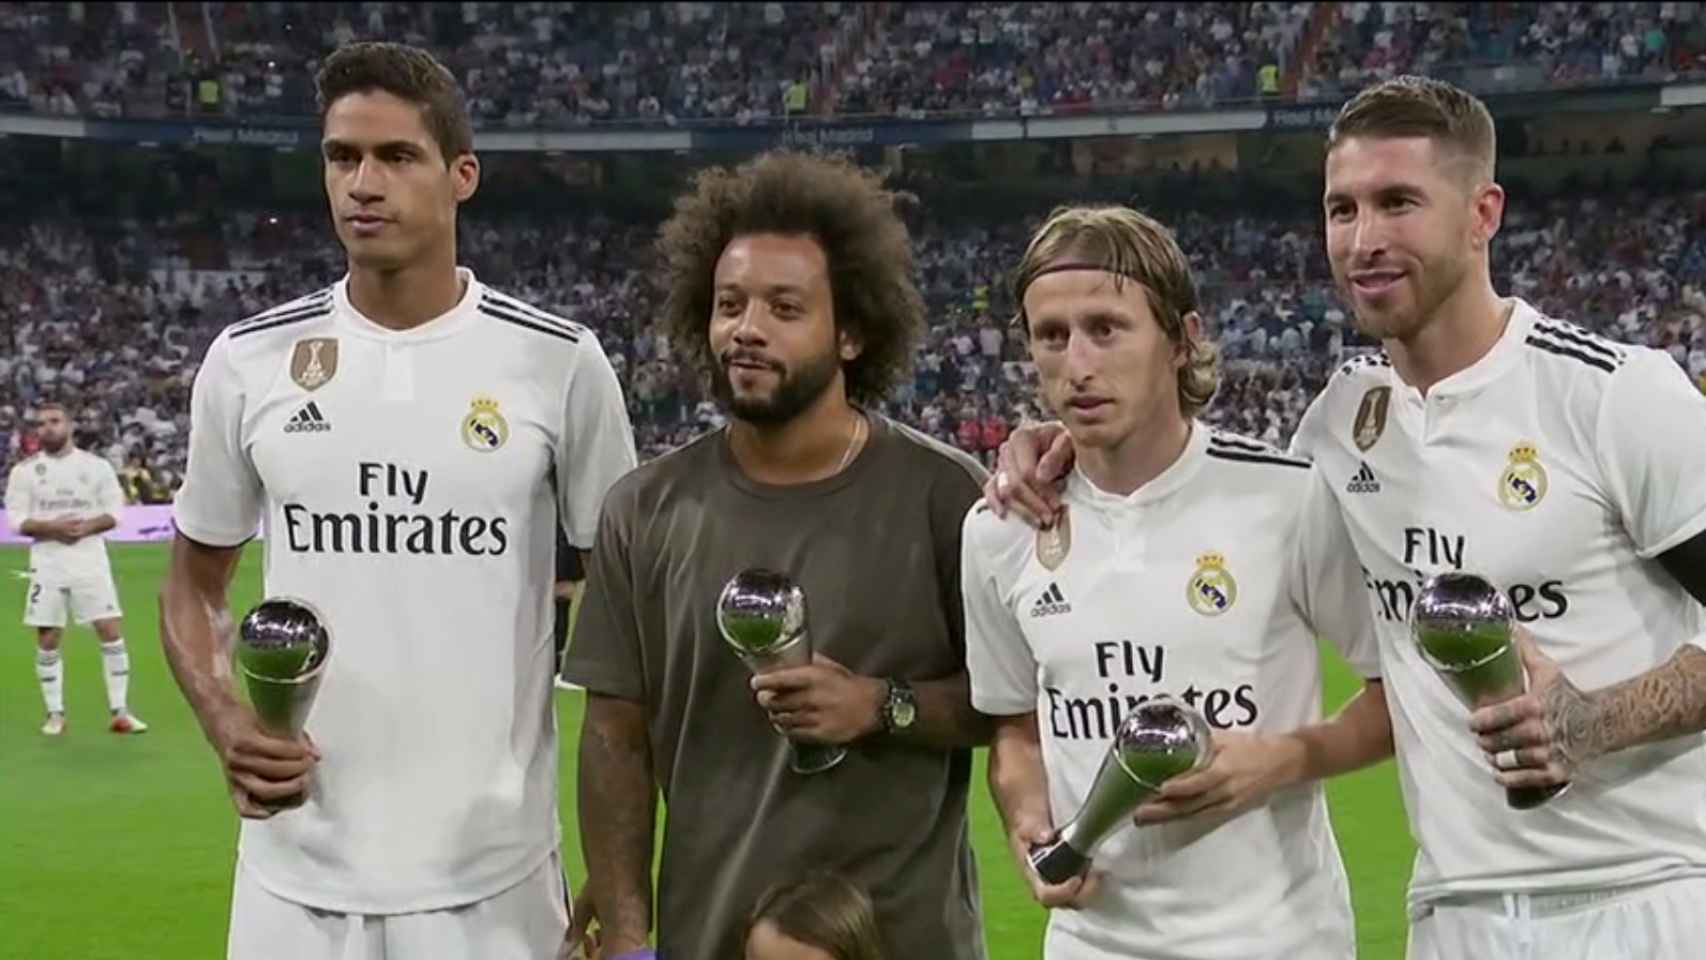 Los cuatro jugadores del Madrid en el once FIFPro